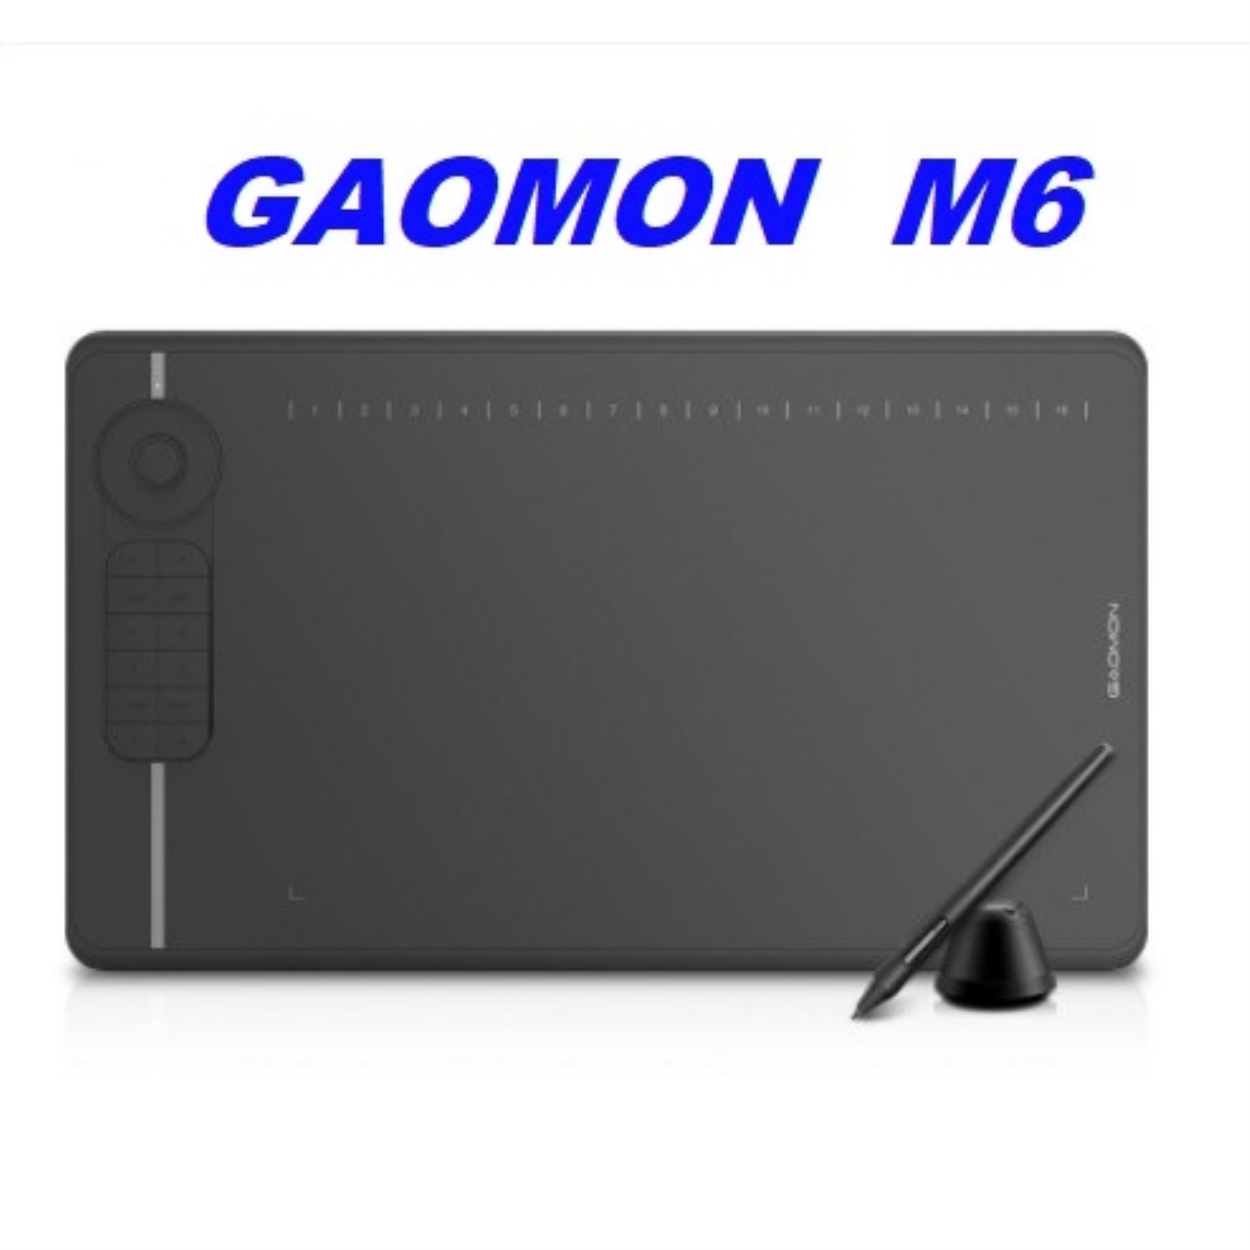 Nếu bạn đang tìm kiếm một bảng vẽ điện tử chất lượng với giá thành hợp lý, thì Gaomon M6 là một lựa chọn tuyệt vời cho nhu cầu của bạn. Hơn nữa, giá của sản phẩm này ở thị trường Việt Nam vào tháng 04/2024 sẽ ưu đãi hơn bao giờ hết.